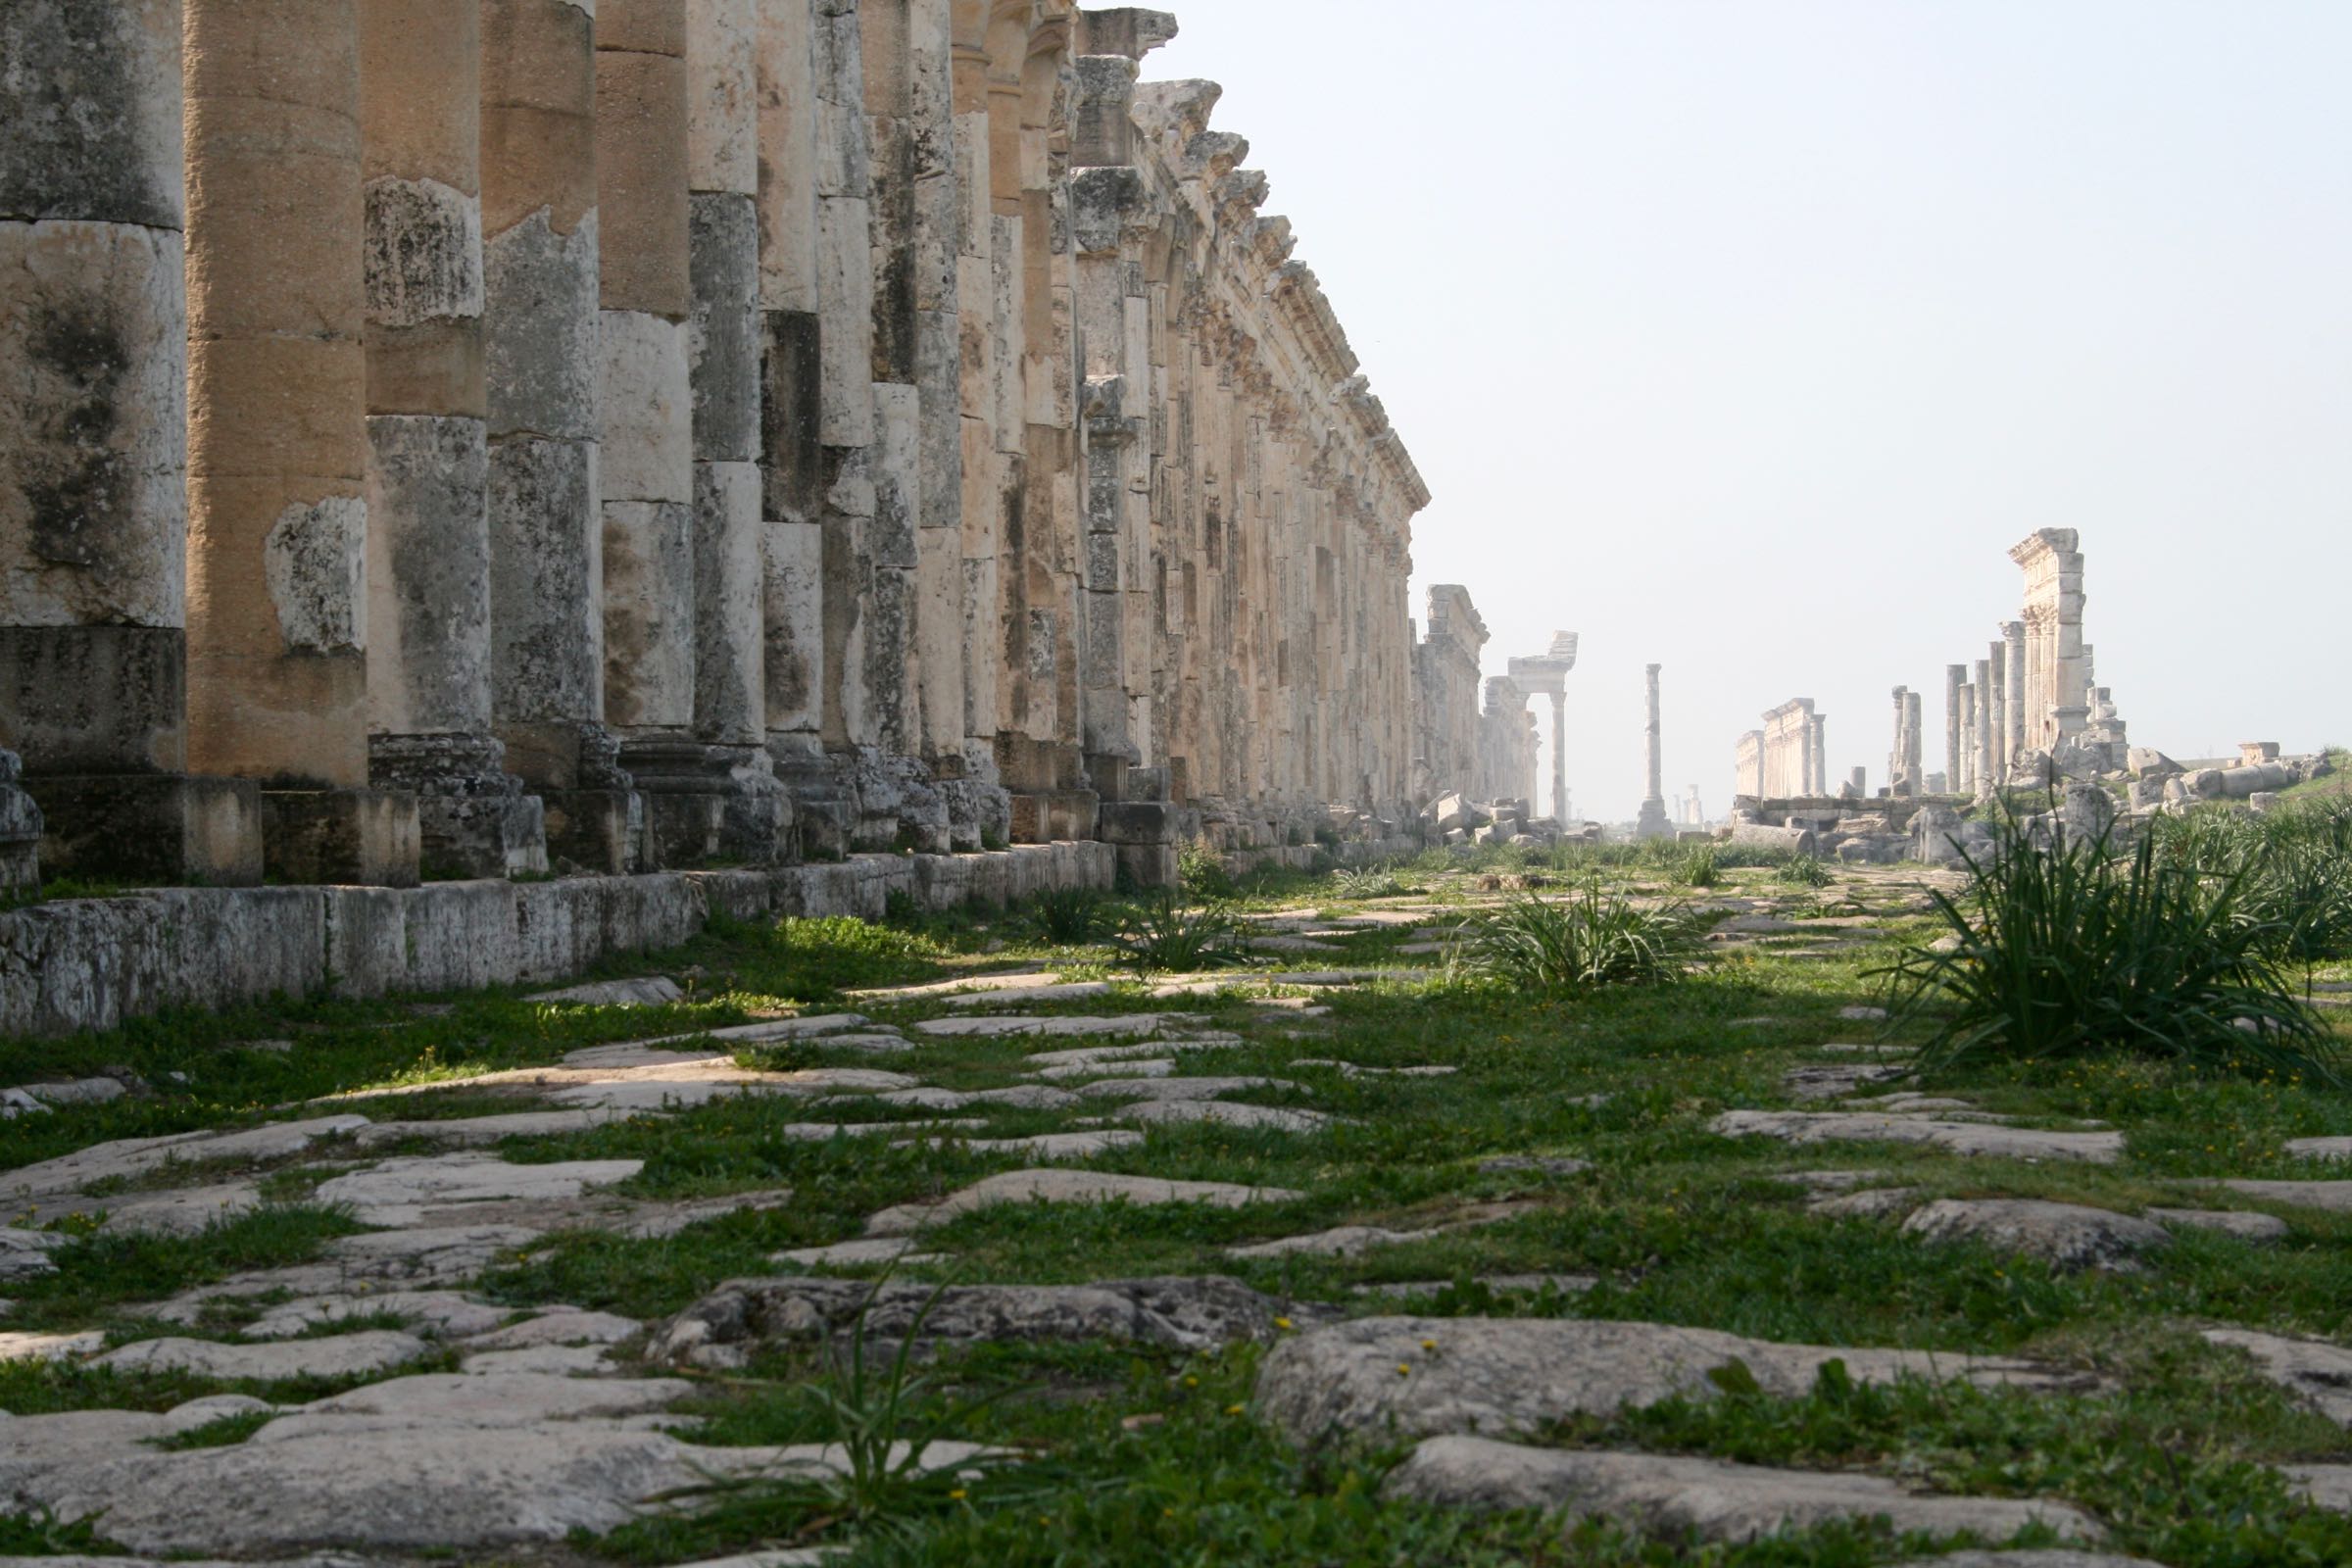 Säulenstraße von Apameia am Orontes, Syrien